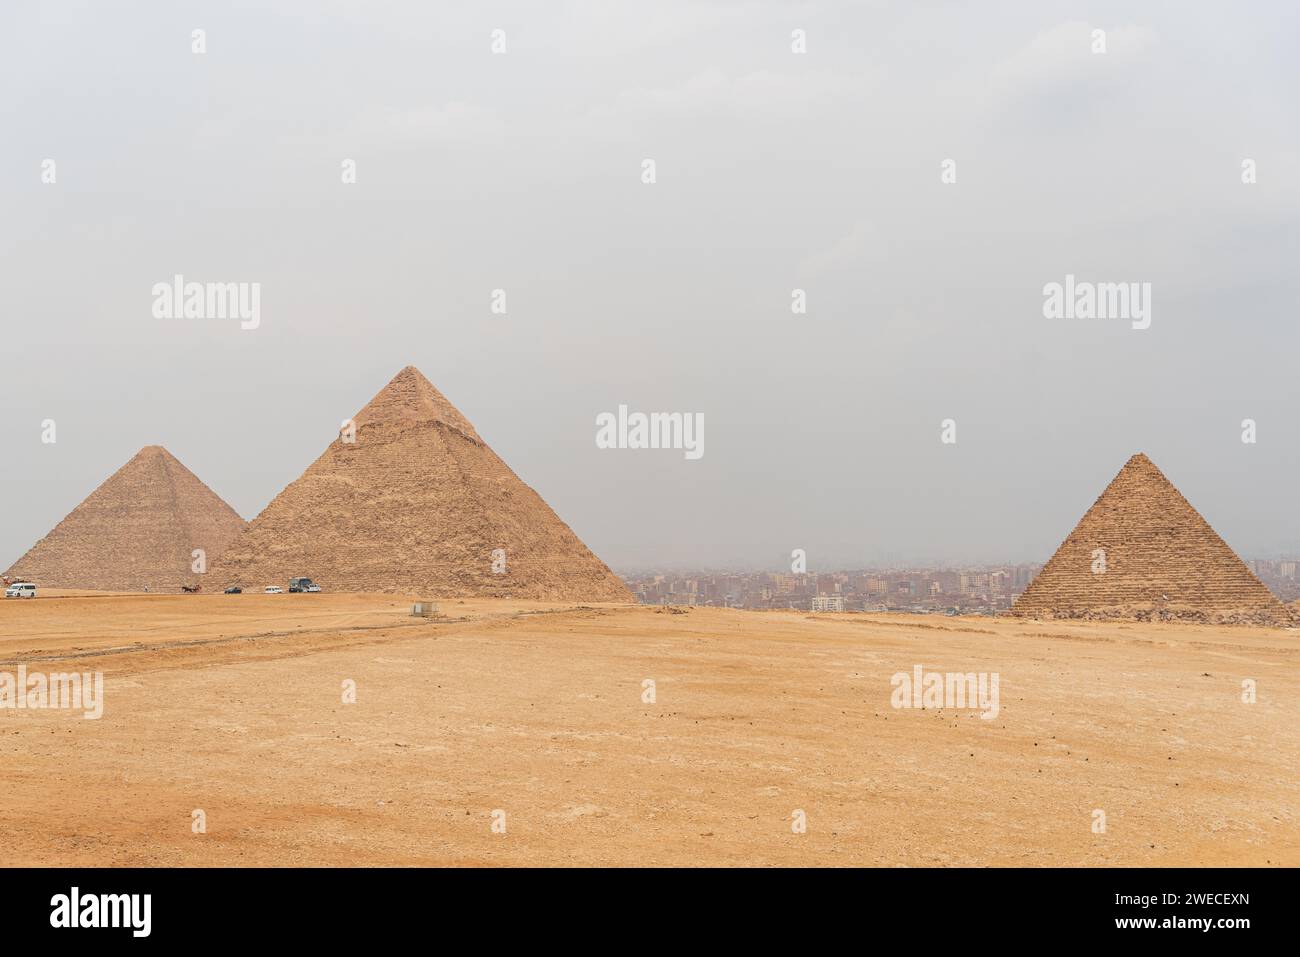 Trio de Gizeh : merveilles anciennes sur le plateau égyptien, témoignage de l'éclat architectural et des mystères d'une civilisation révolue. Banque D'Images